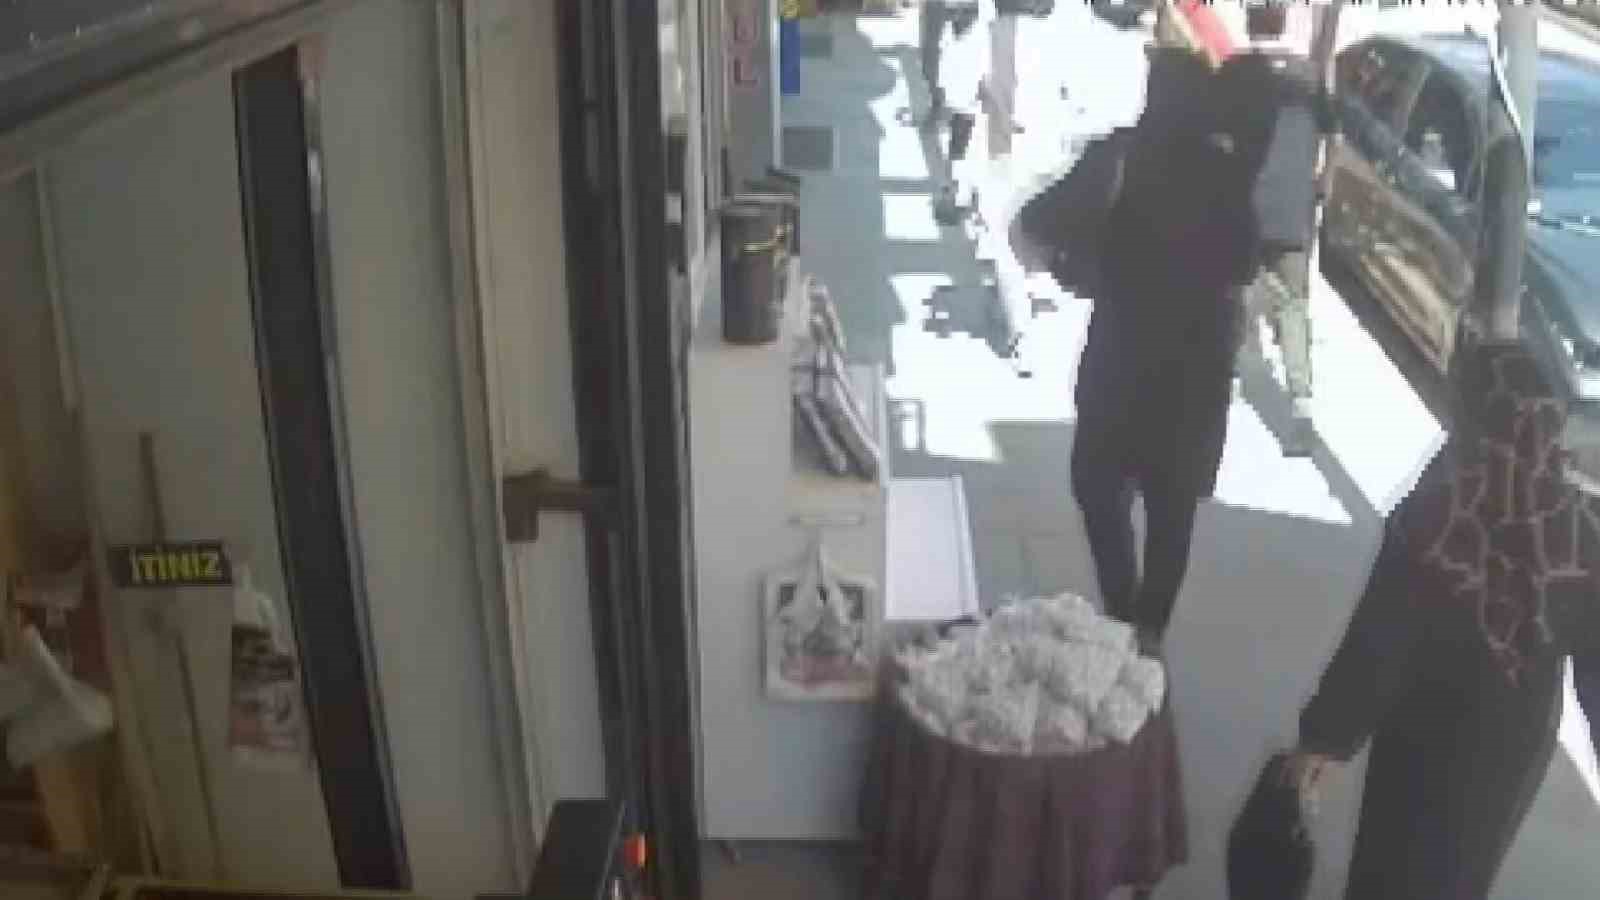 Elazığ’da bir kadın, orcik çalarken güvenlik kamerasına yakalandı
